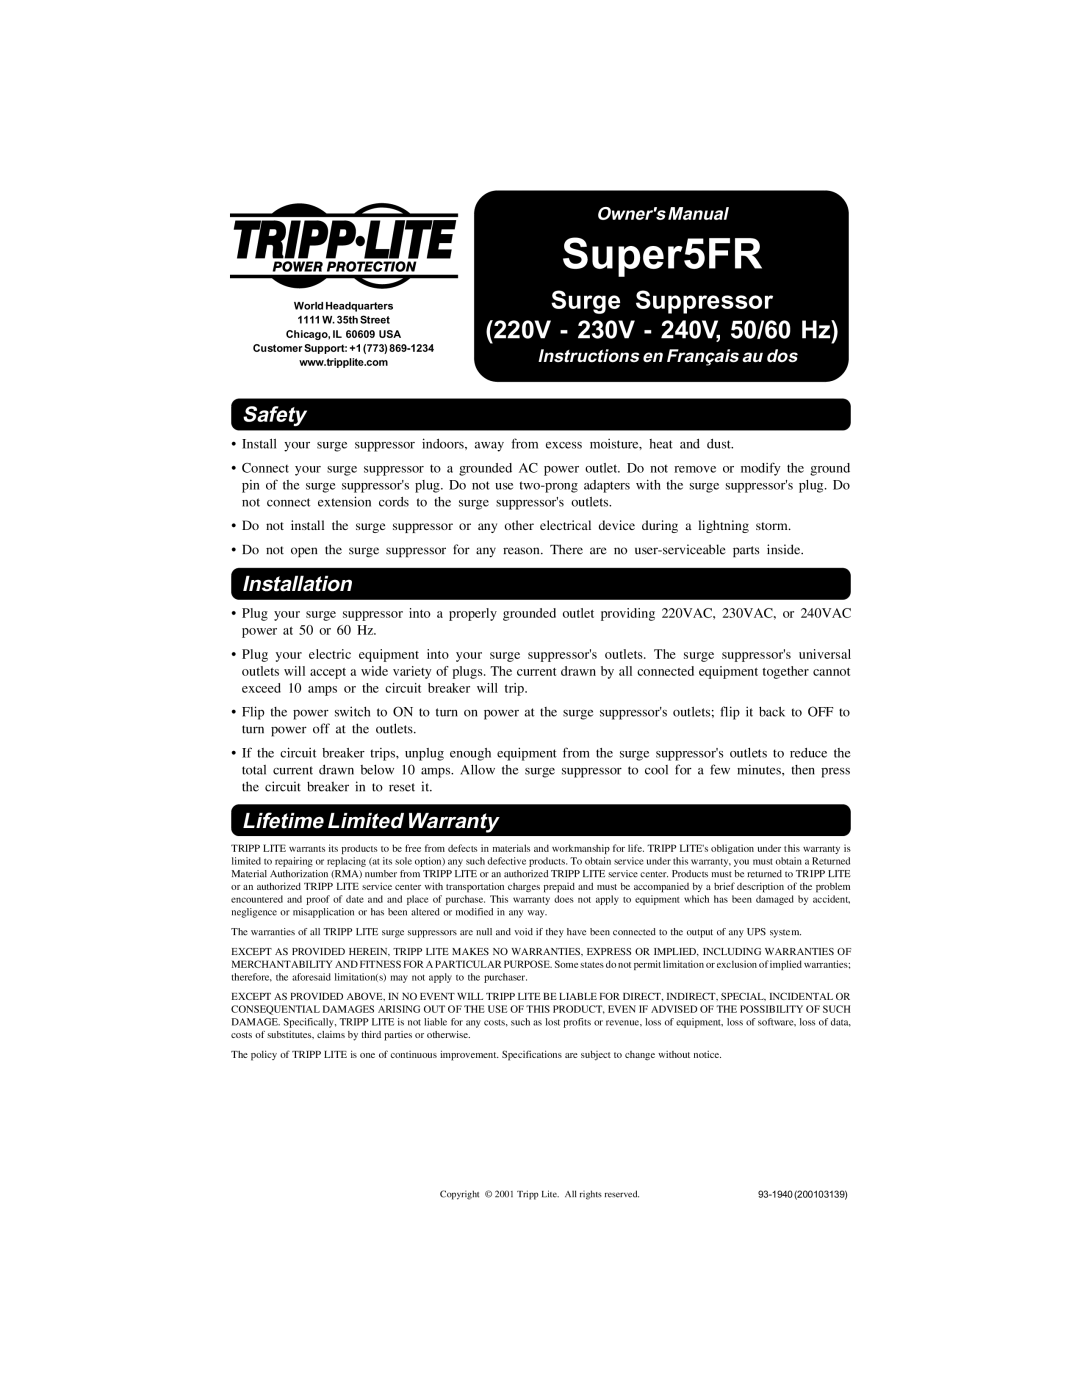 Tripp Lite Super5FR owner manual Surge Suppressor, 220V - 230V - 240V, 50/60 Hz, Safety, Installation, Owners Manual 